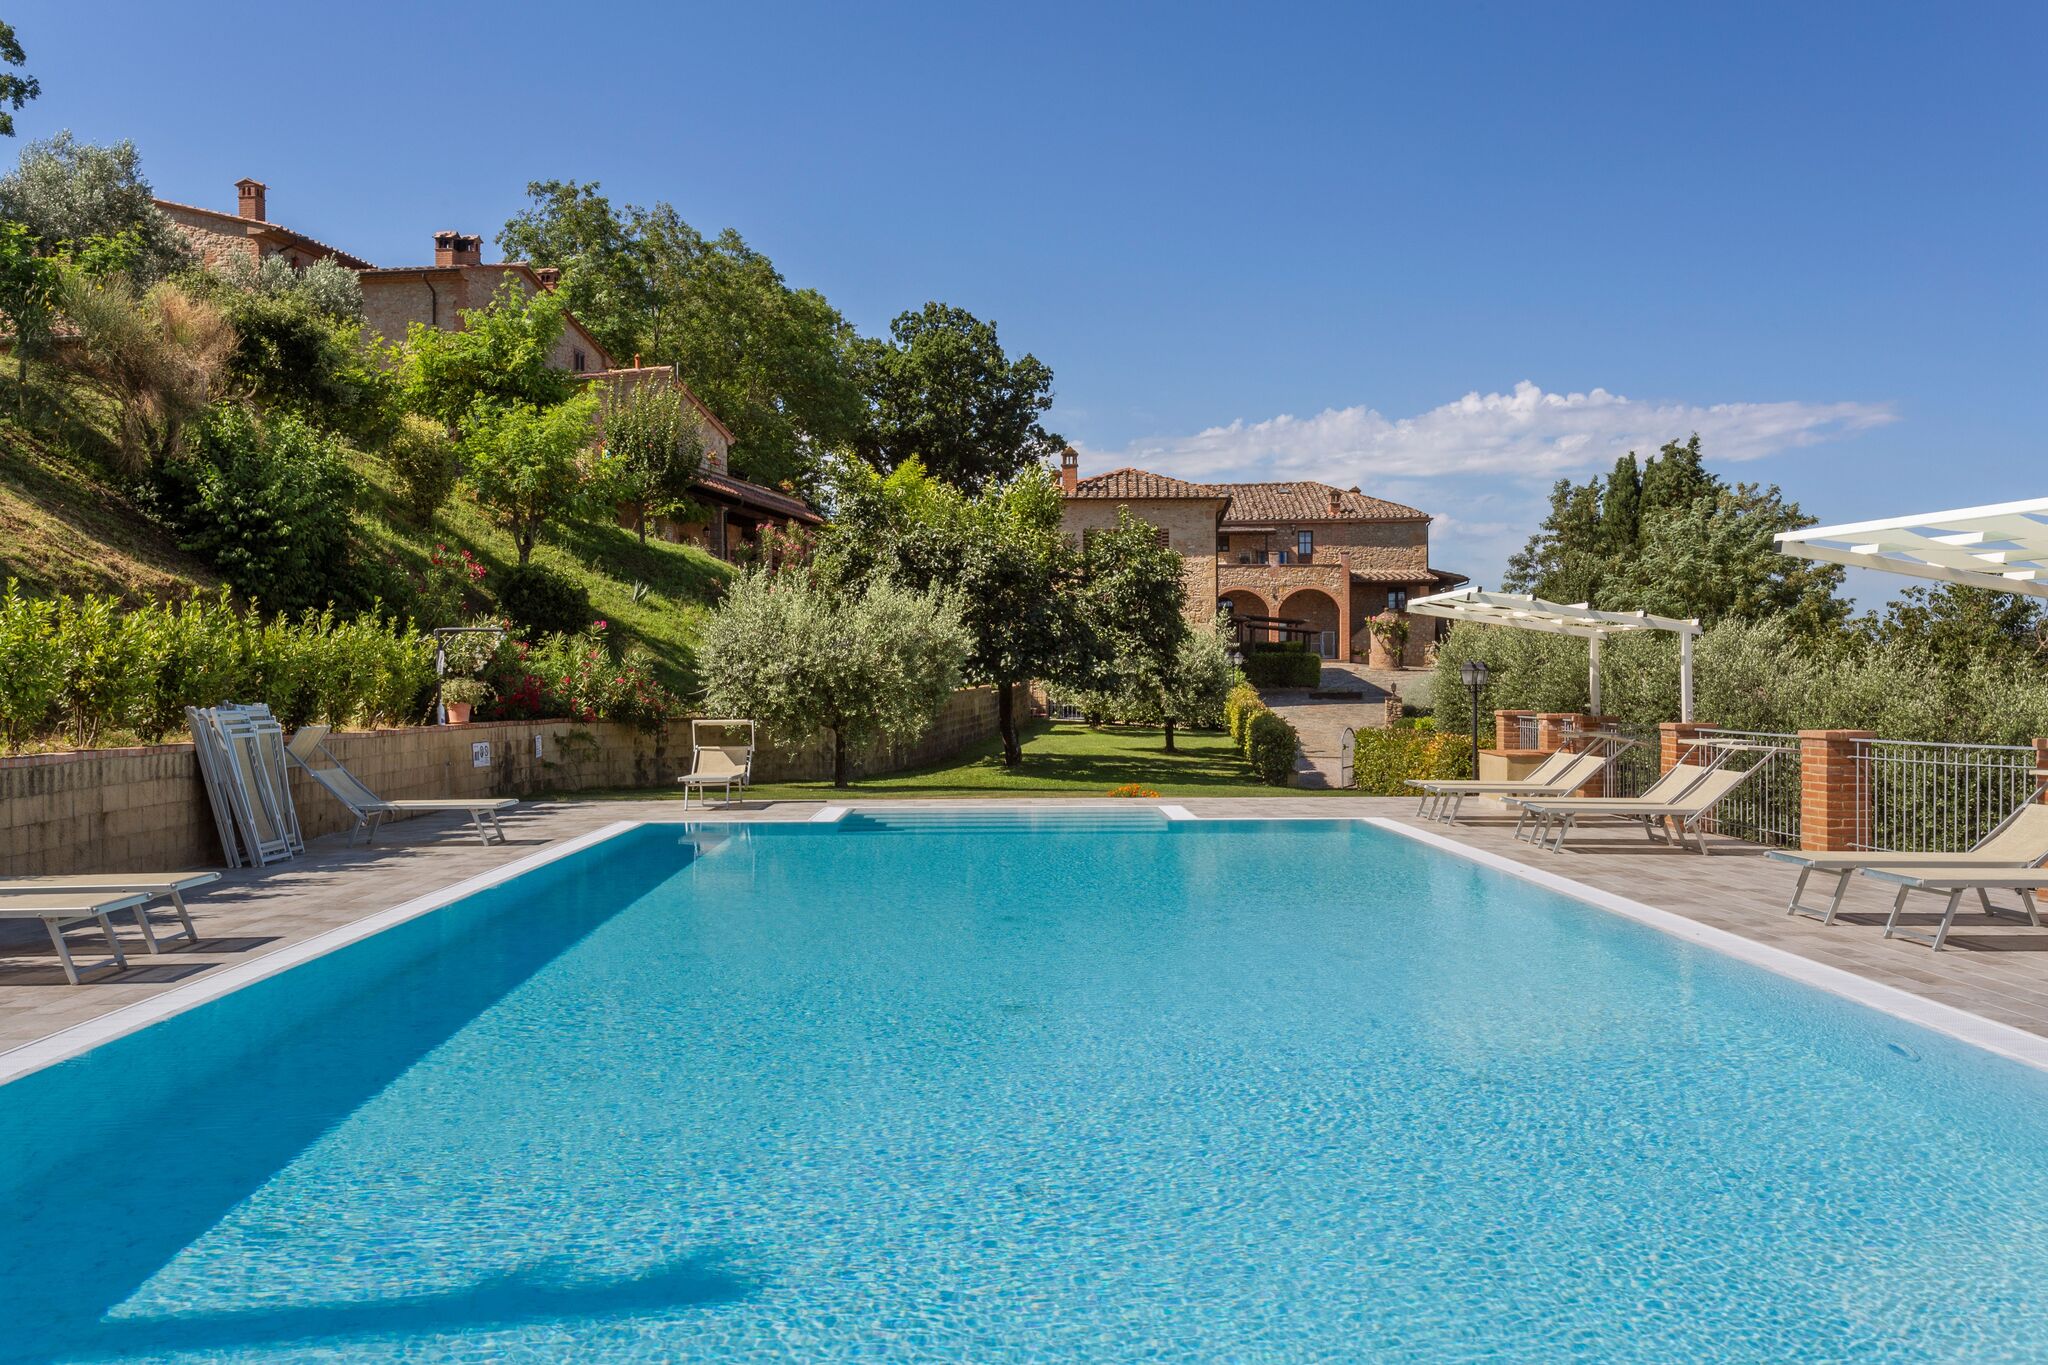  Maison de vacances tranquille à Volterra avec piscine